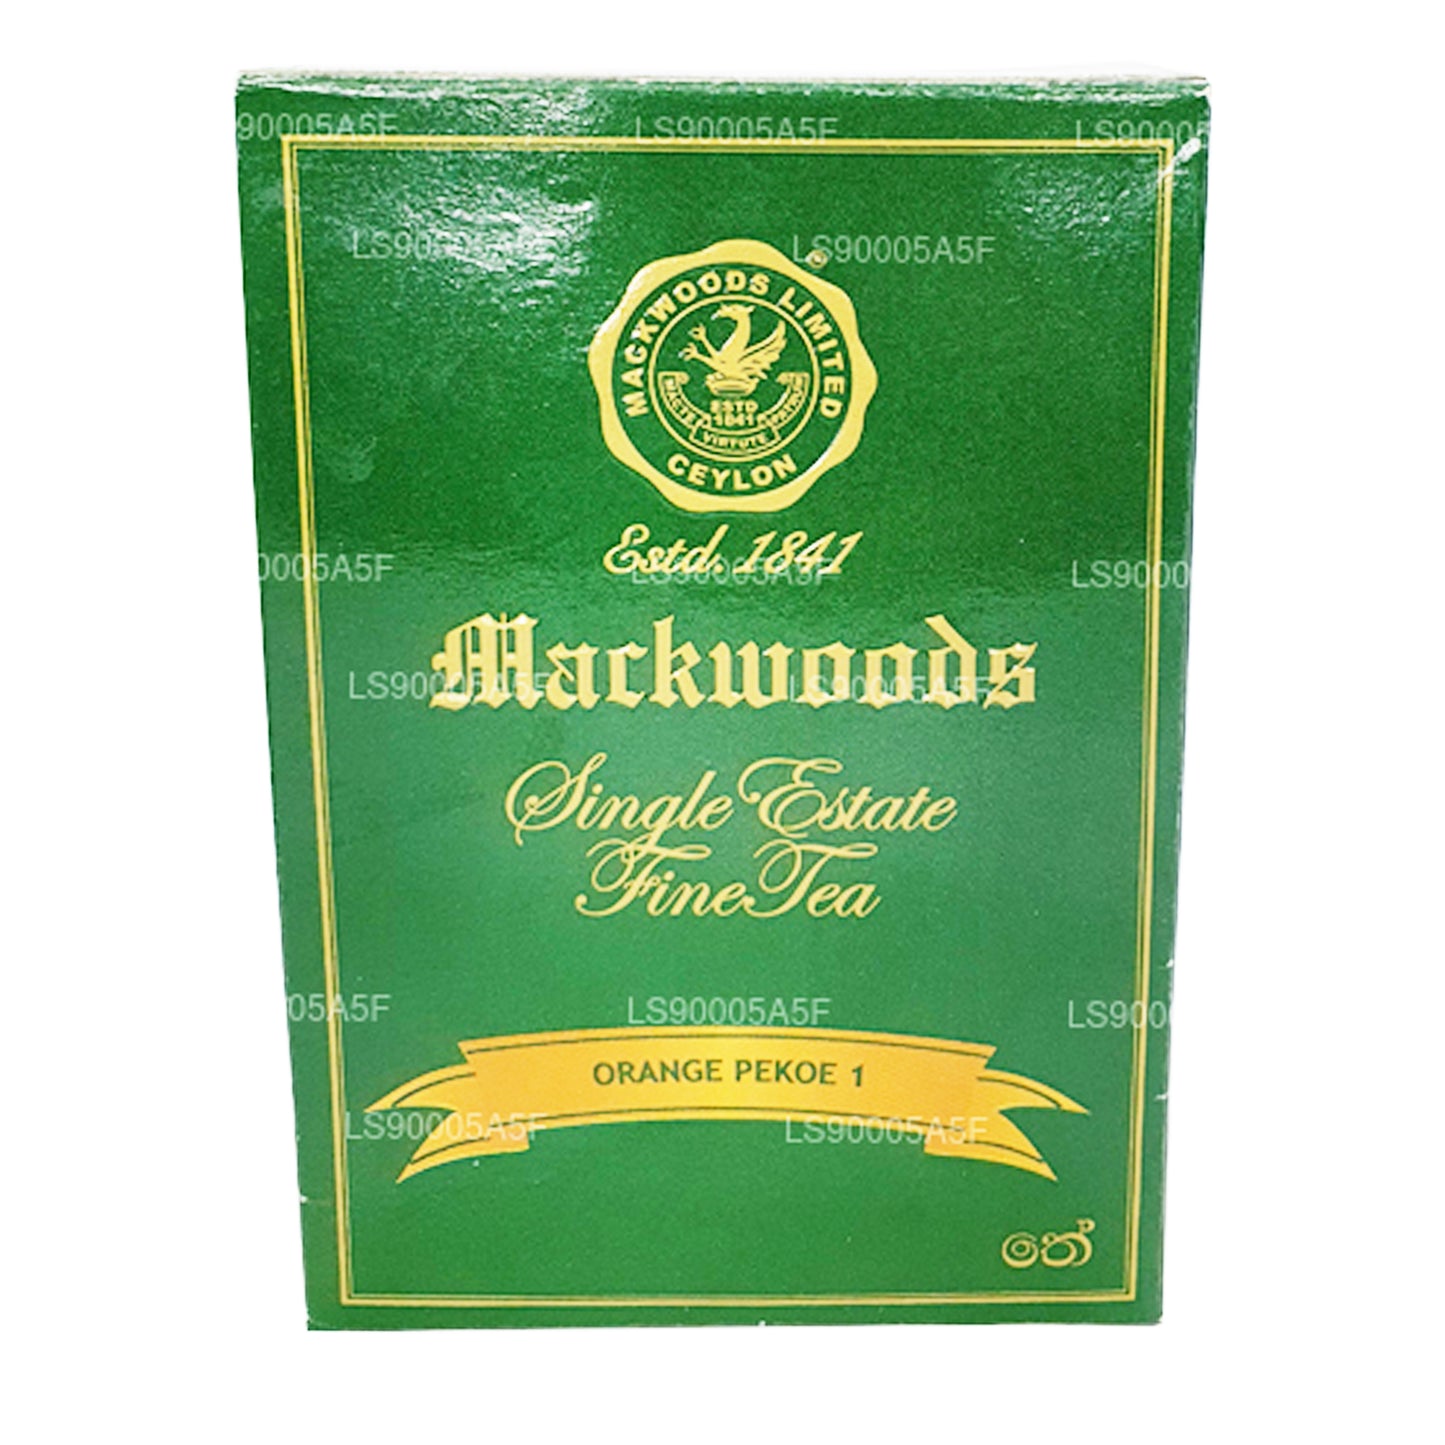 Mackwoods Portakal PEKOE 1 Çay (100g)